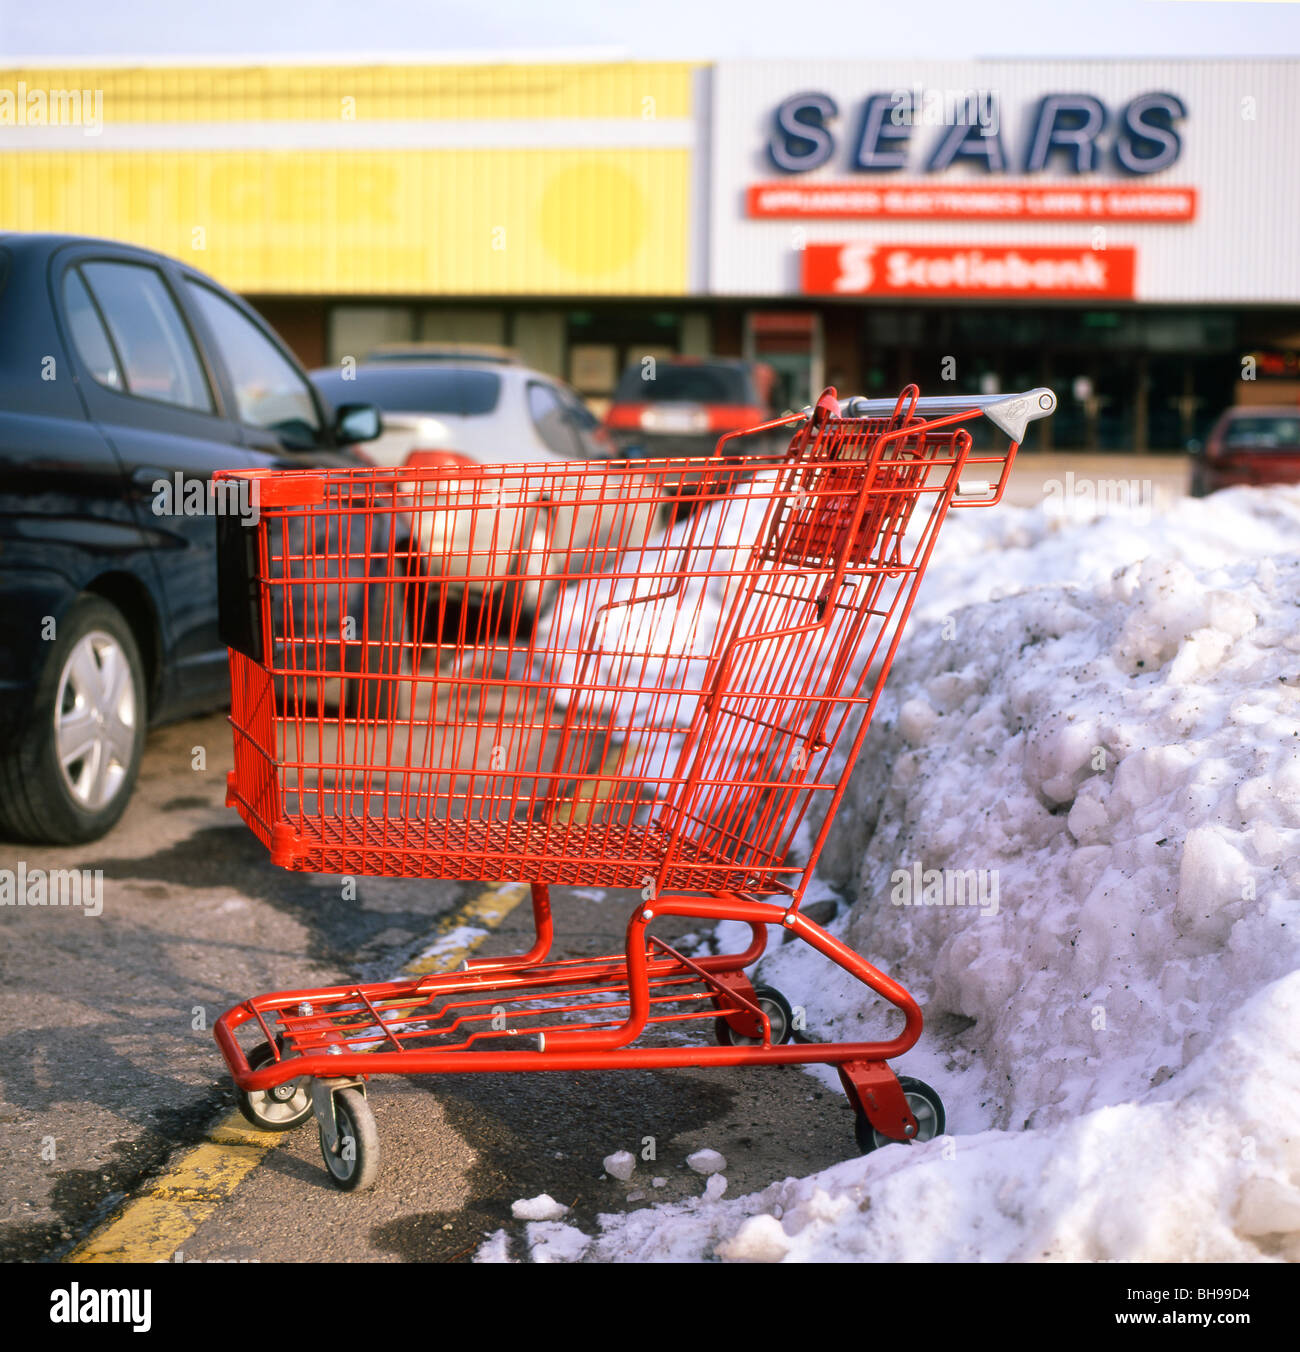 Rouge Panier vide dans un parking enneigé à l'extérieur de l'Ontario Fort Erie magasin Sears Canada Banque D'Images